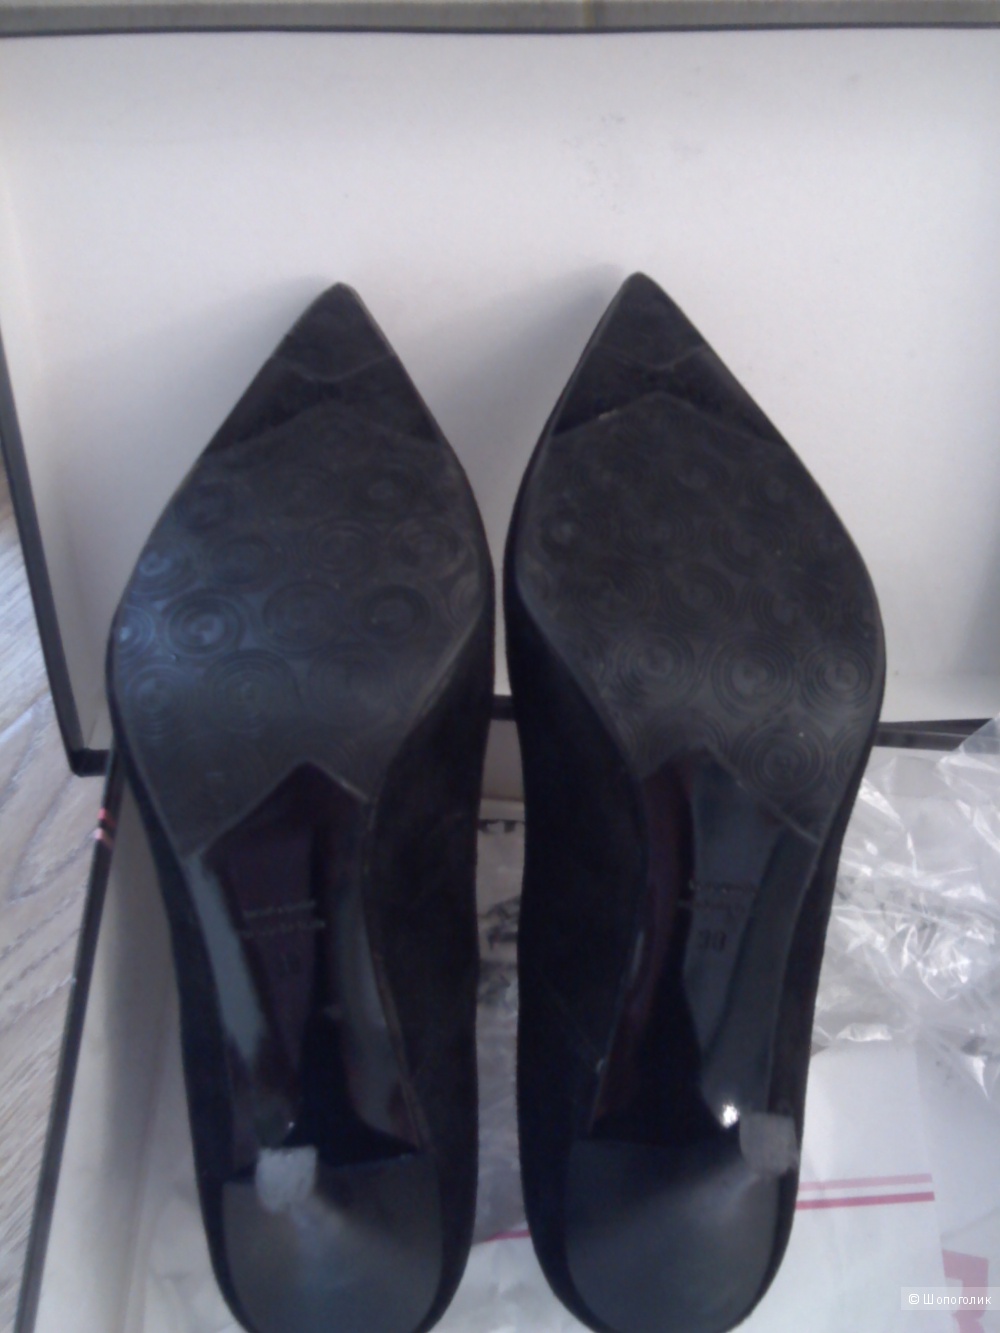 Замшевые туфли Marino Fabiani, размер 36.5-37 Италия, оригинал, новая вещь.